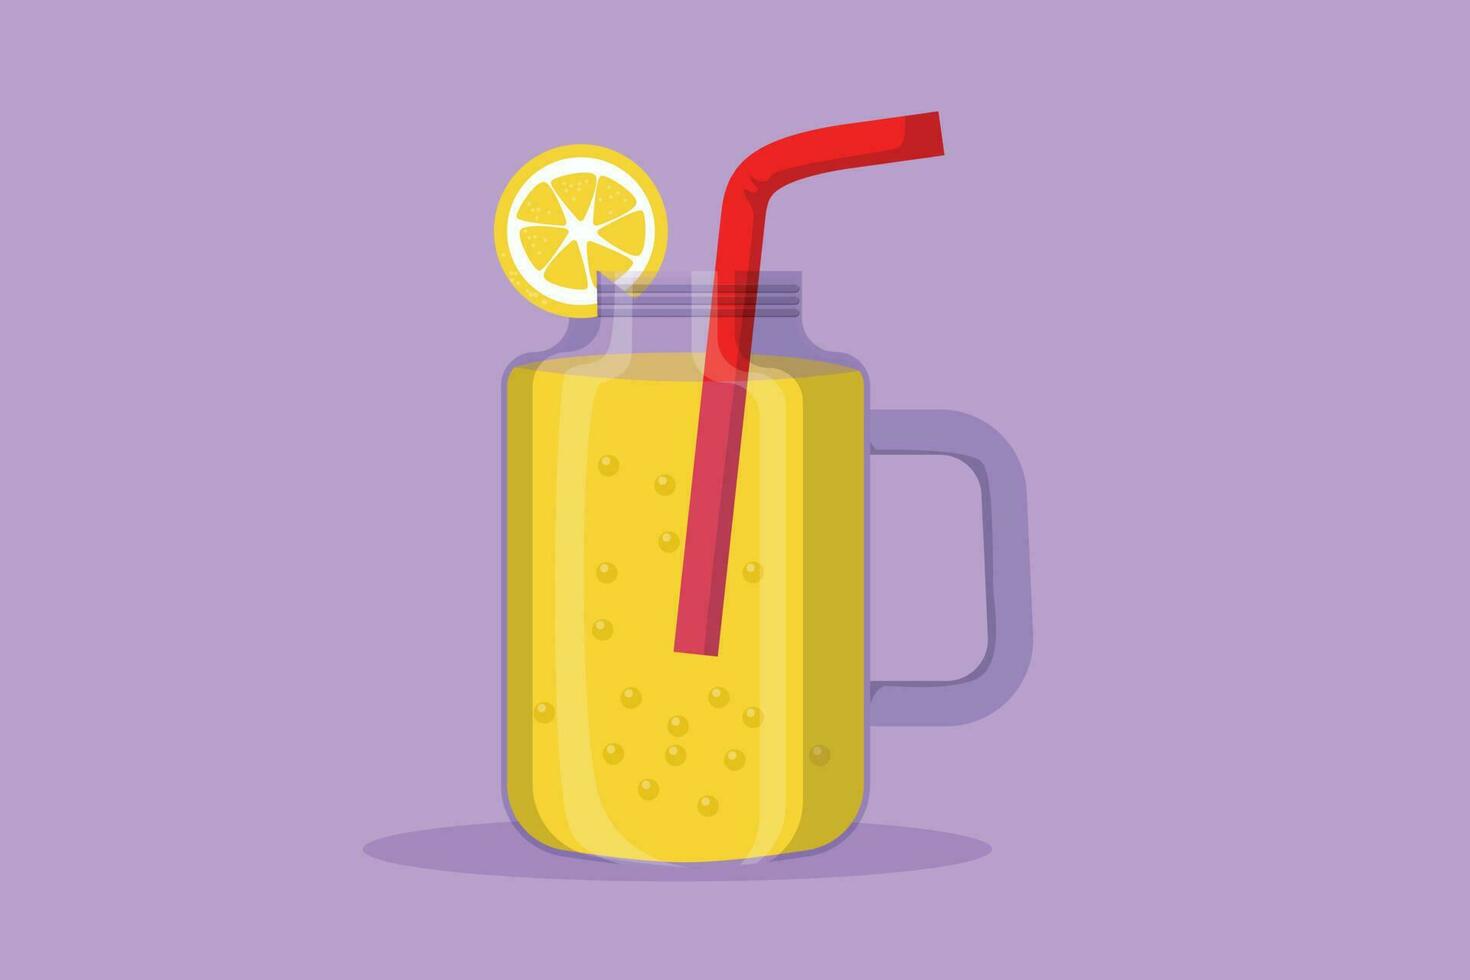 Graphic flat design drawing of stylized lemonade ice logo, label, flyer, sticker, symbol. Beverage lemon drink menu restaurant for cafe shop or food delivery service. Cartoon style vector illustration